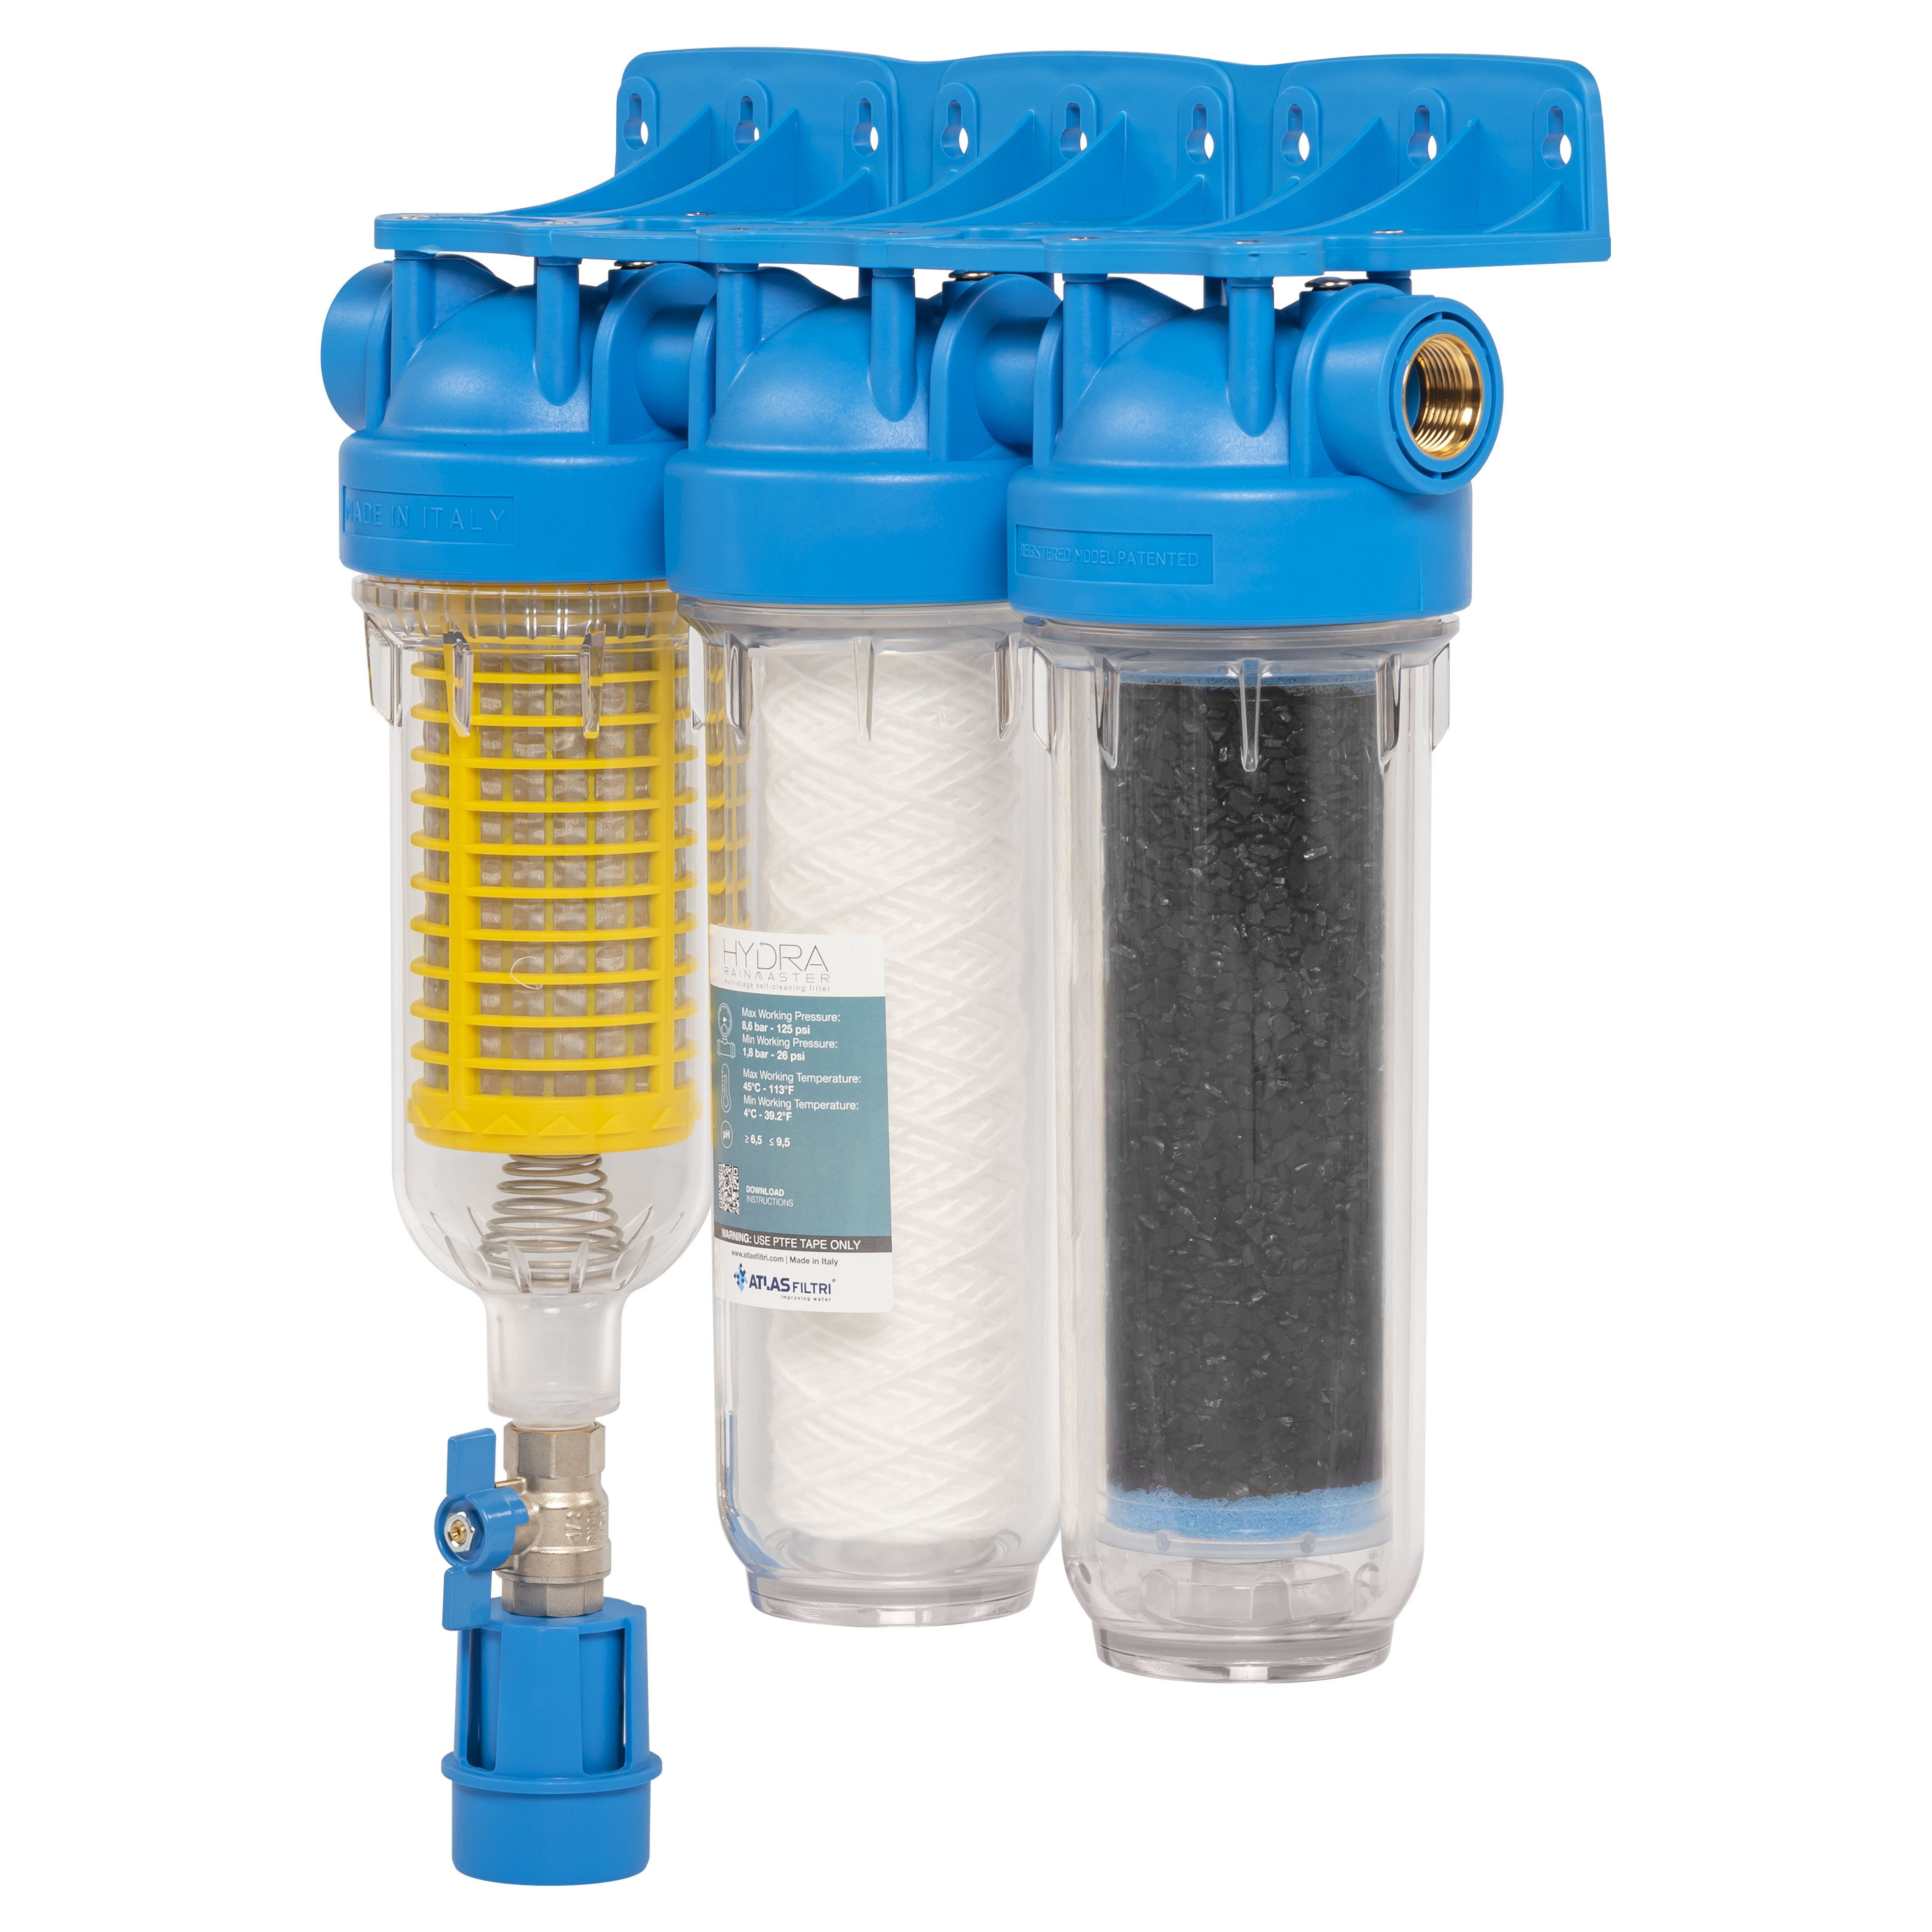 Фильтр для очистки воды от ржавчины и песка Atlas Filtri Hydra Rainmaster Trio LA 3/4 KIT (RA6095224)